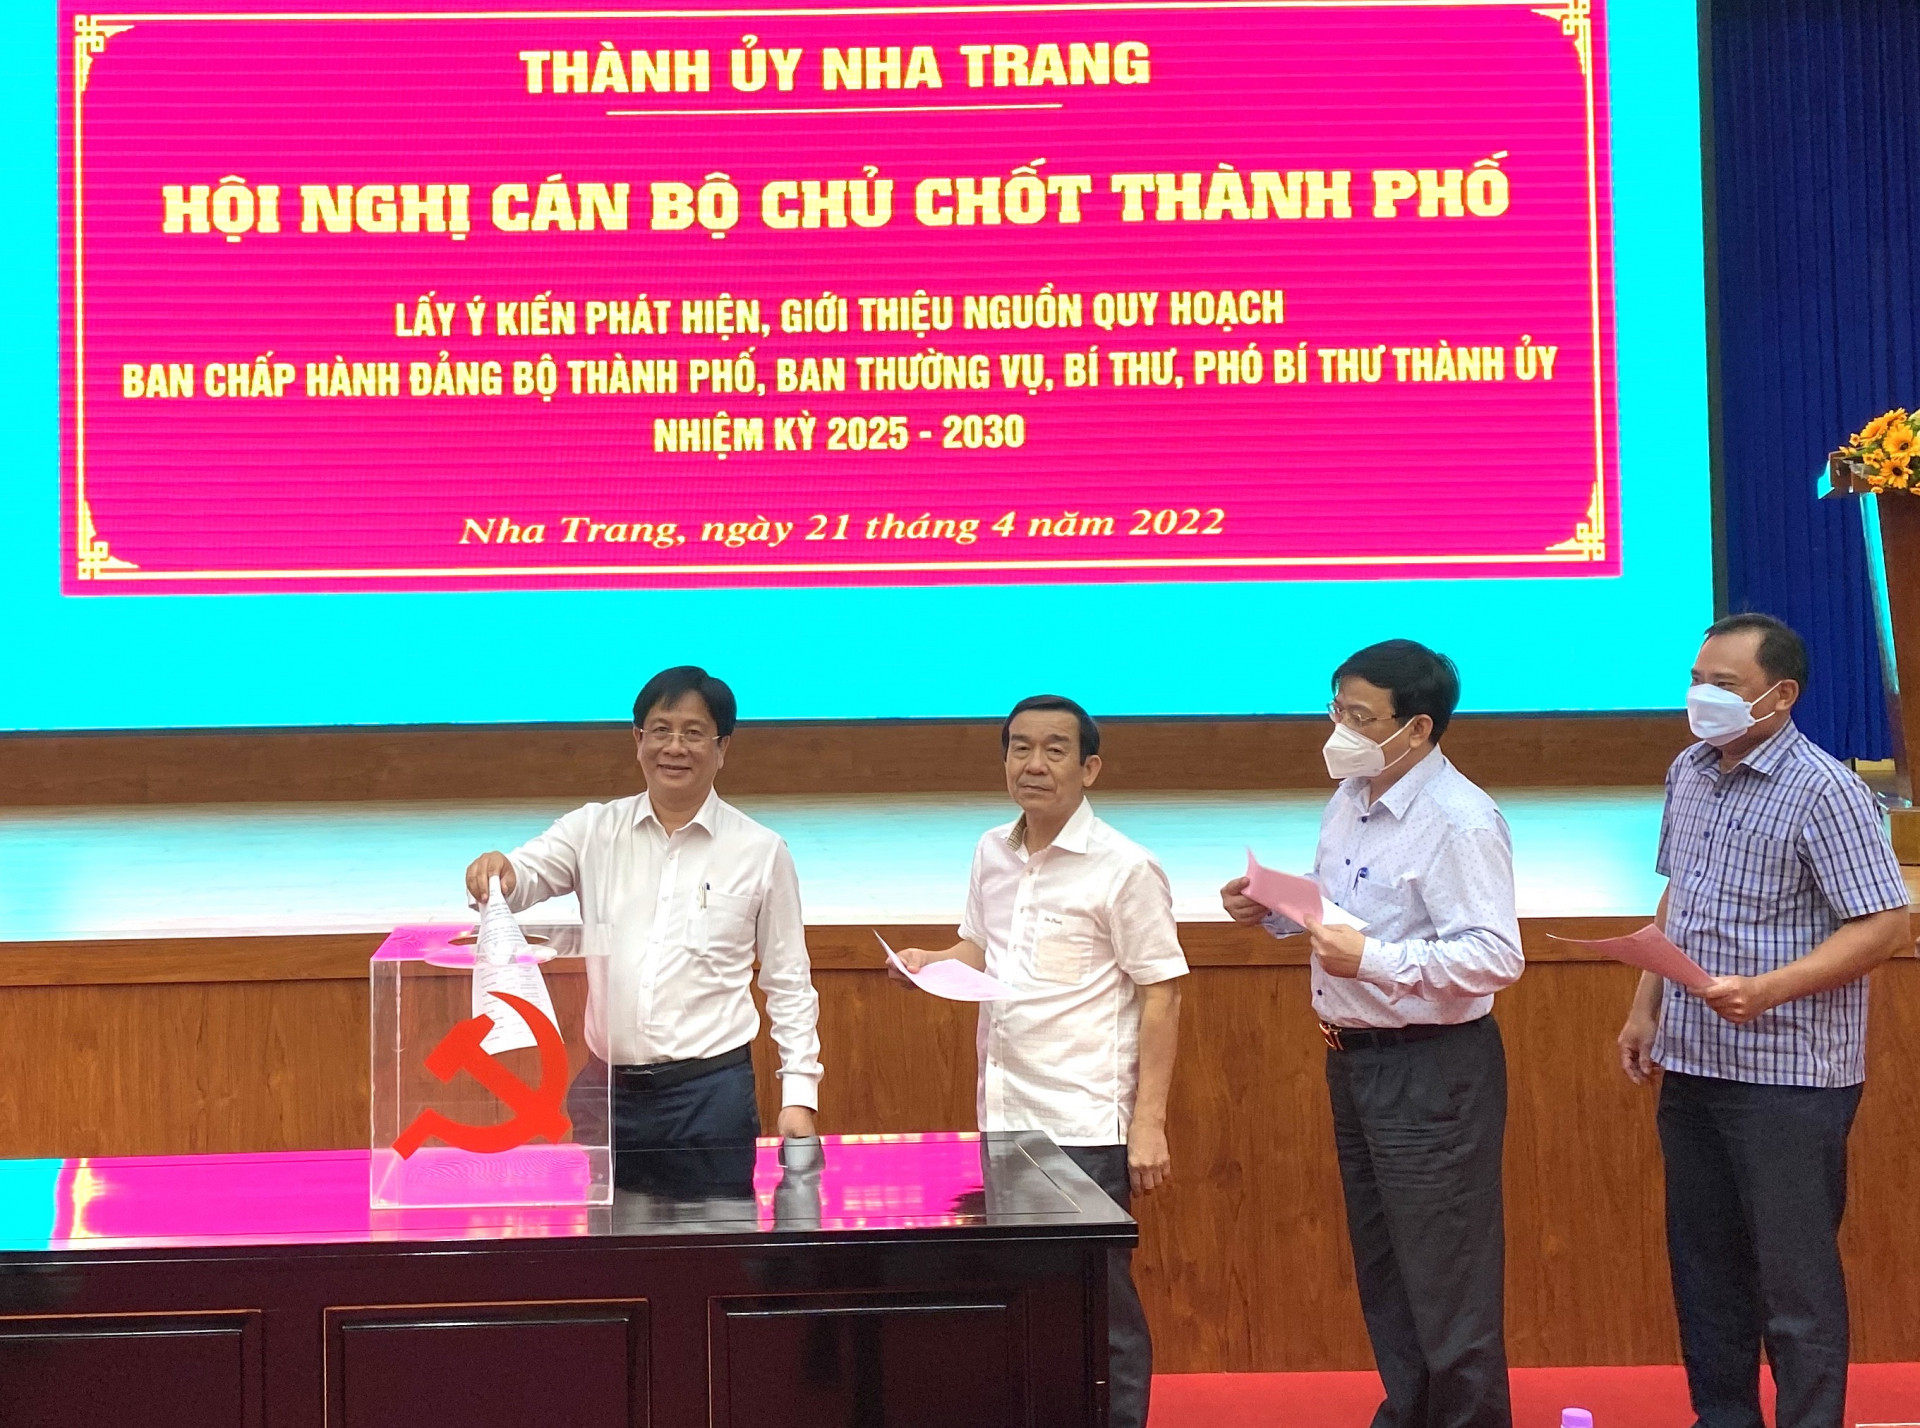 Hội nghị cán bộ chủ chốt TP. Nha Trang lấy ý kiến (bằng phiếu kín) giới thiệu nguồn quy hoạch Ban Chấp hành Đảng bộ thành phố, Ban Thường vụ, Bí thư, Phó Bí thư Thành ủy nhiệm kỳ 2025 - 2030.